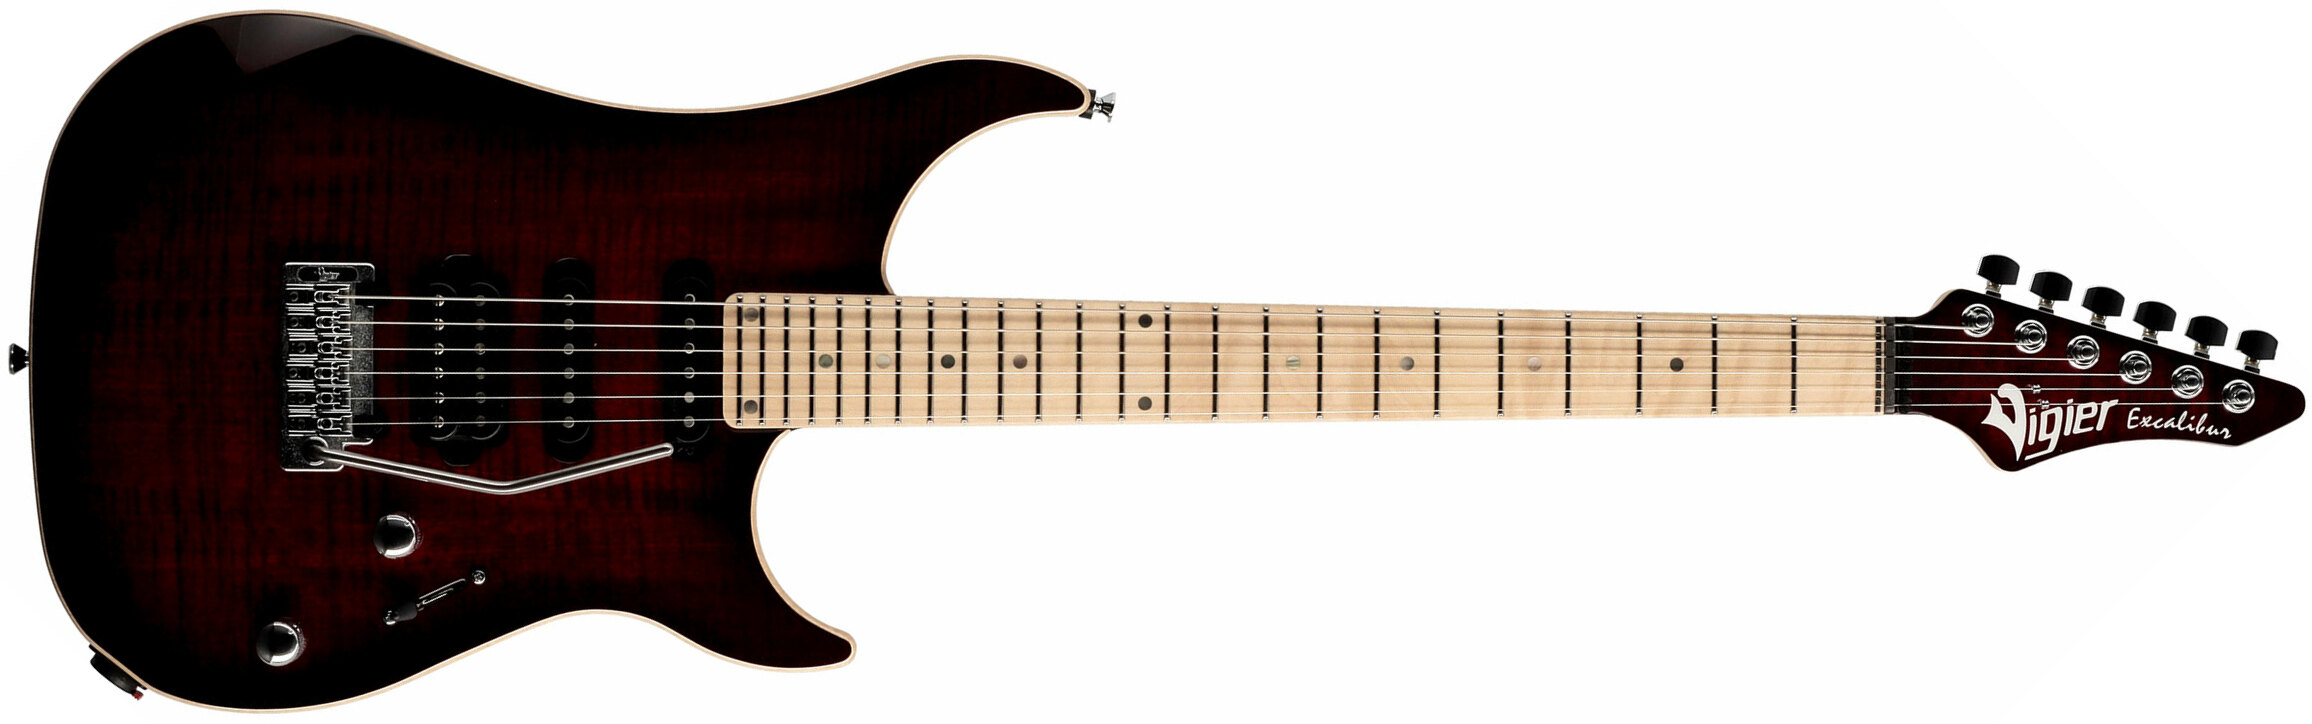 Vigier Excalibur Ultra Blues Hss Trem Mn - Deep Burgundy - Guitarra eléctrica con forma de str. - Main picture